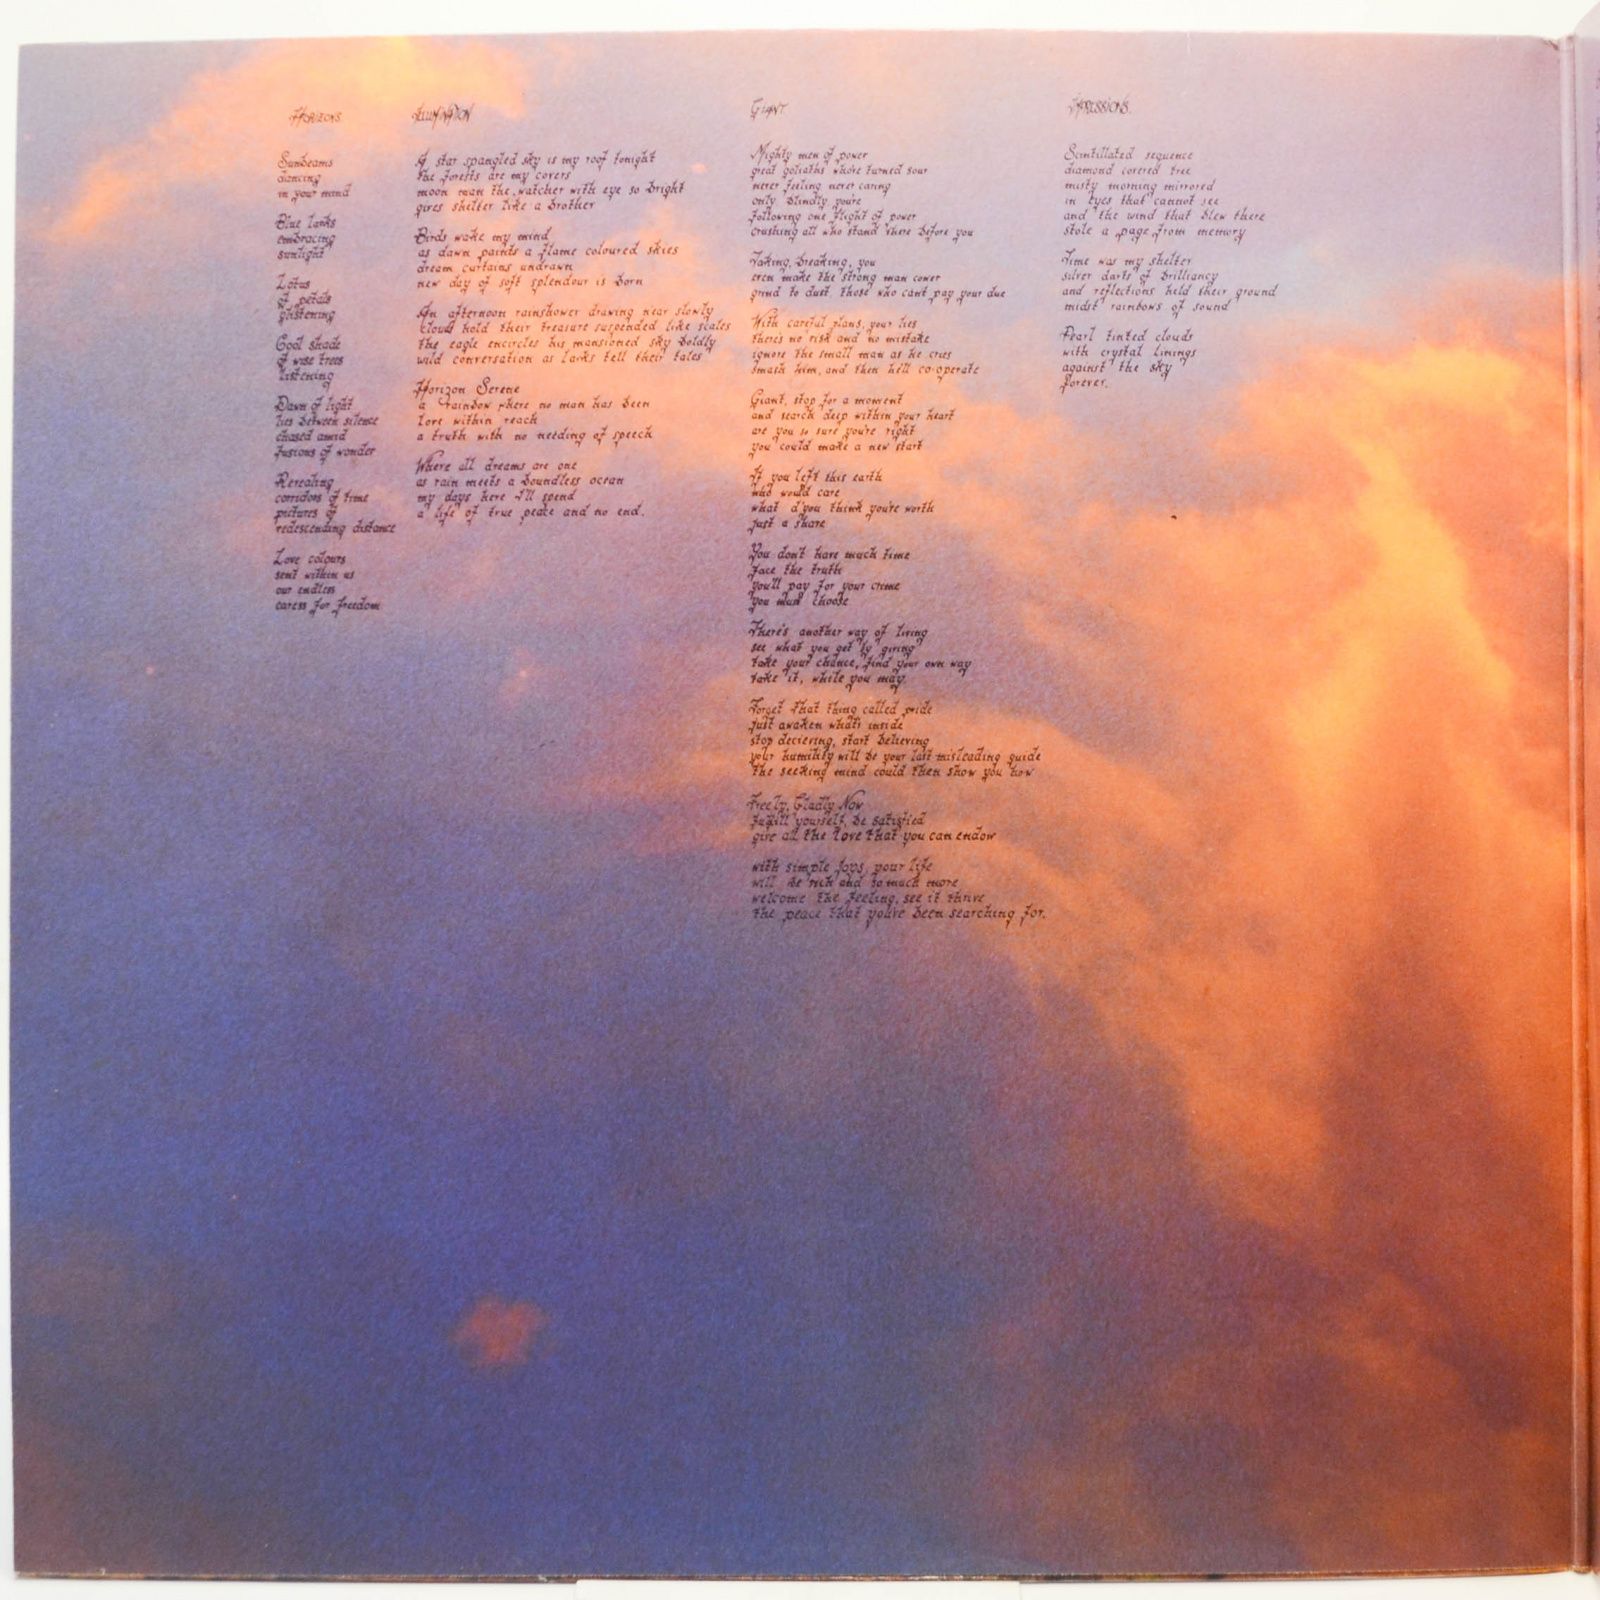 Eloy — Colours, 1980